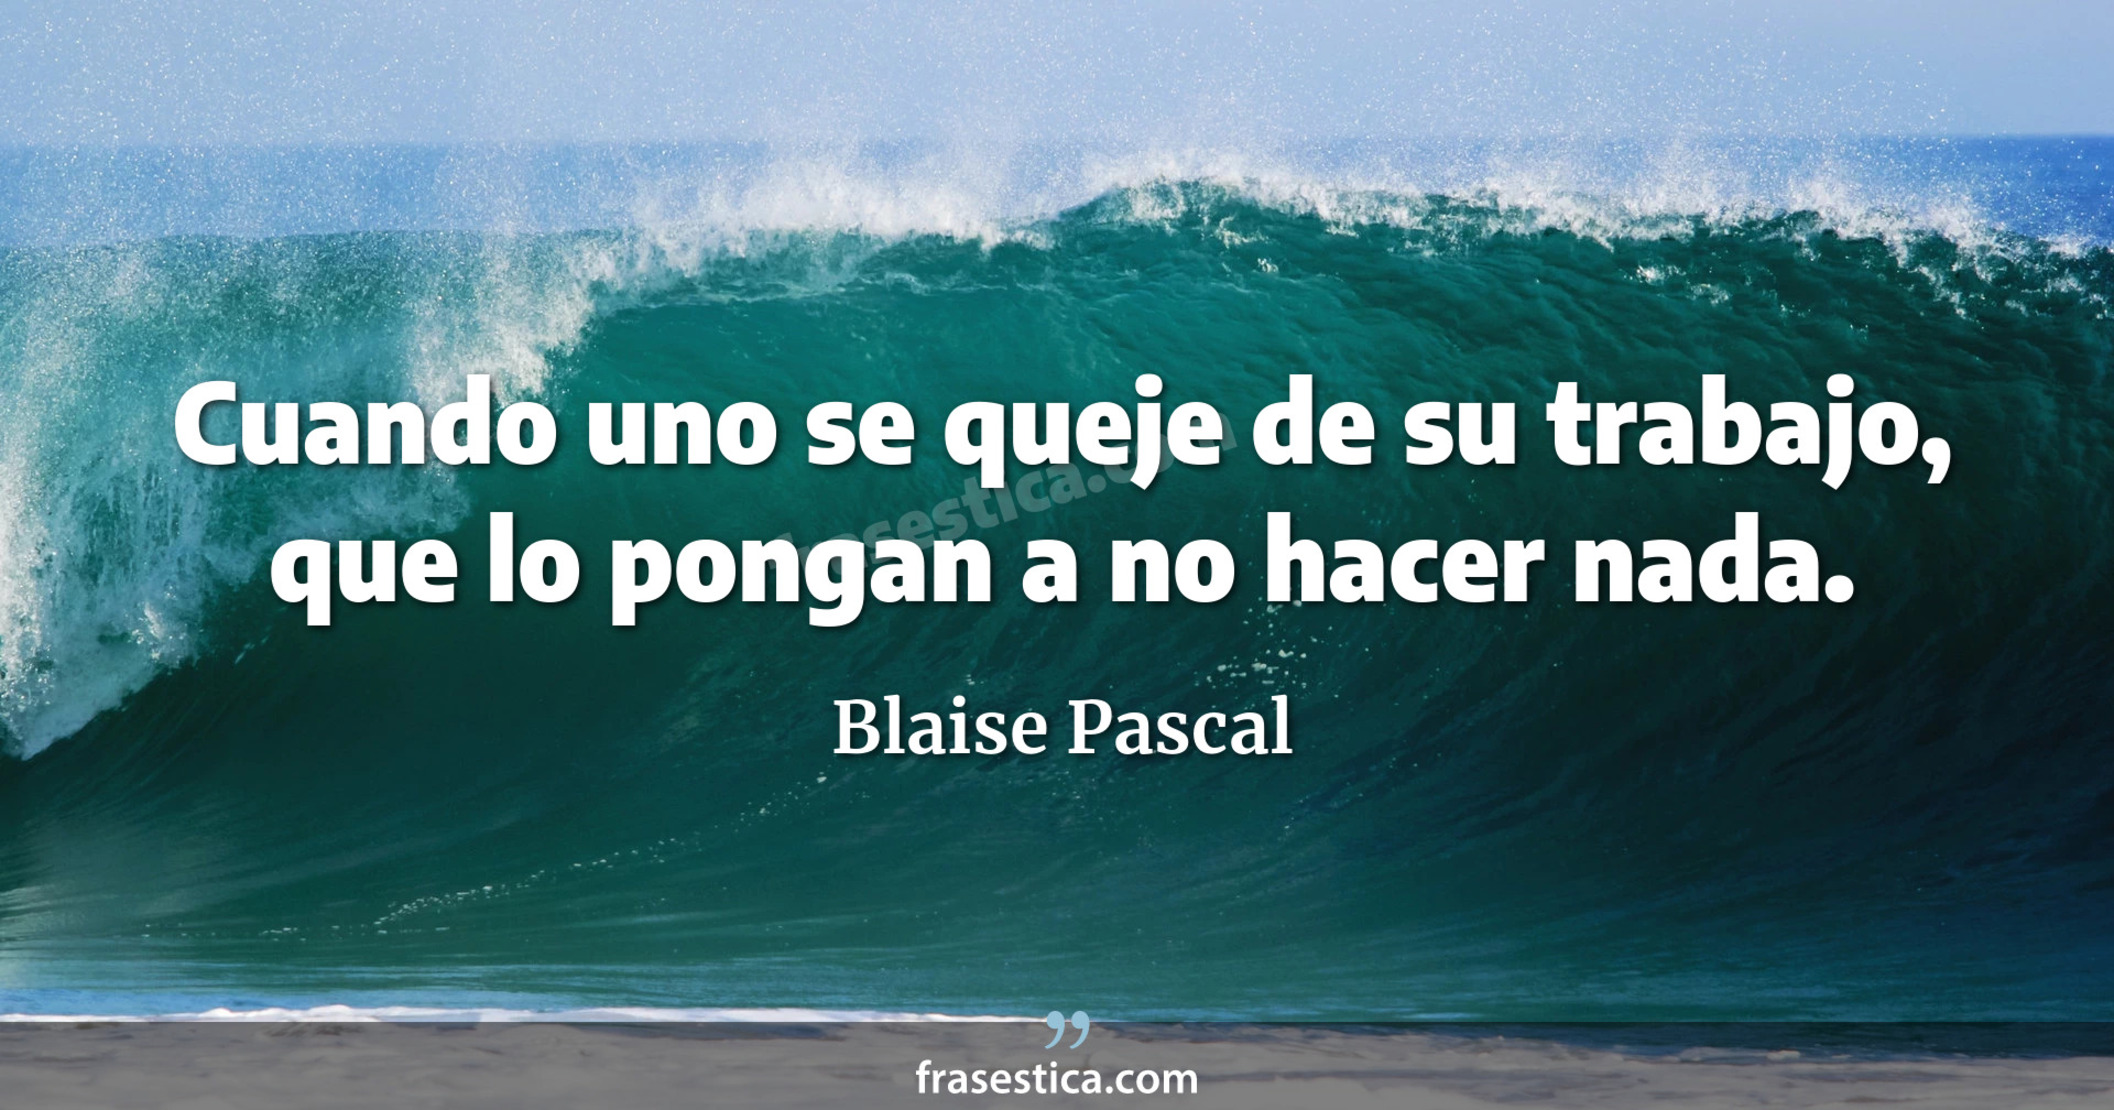 Cuando uno se queje de su trabajo, que lo pongan a no hacer nada. - Blaise Pascal